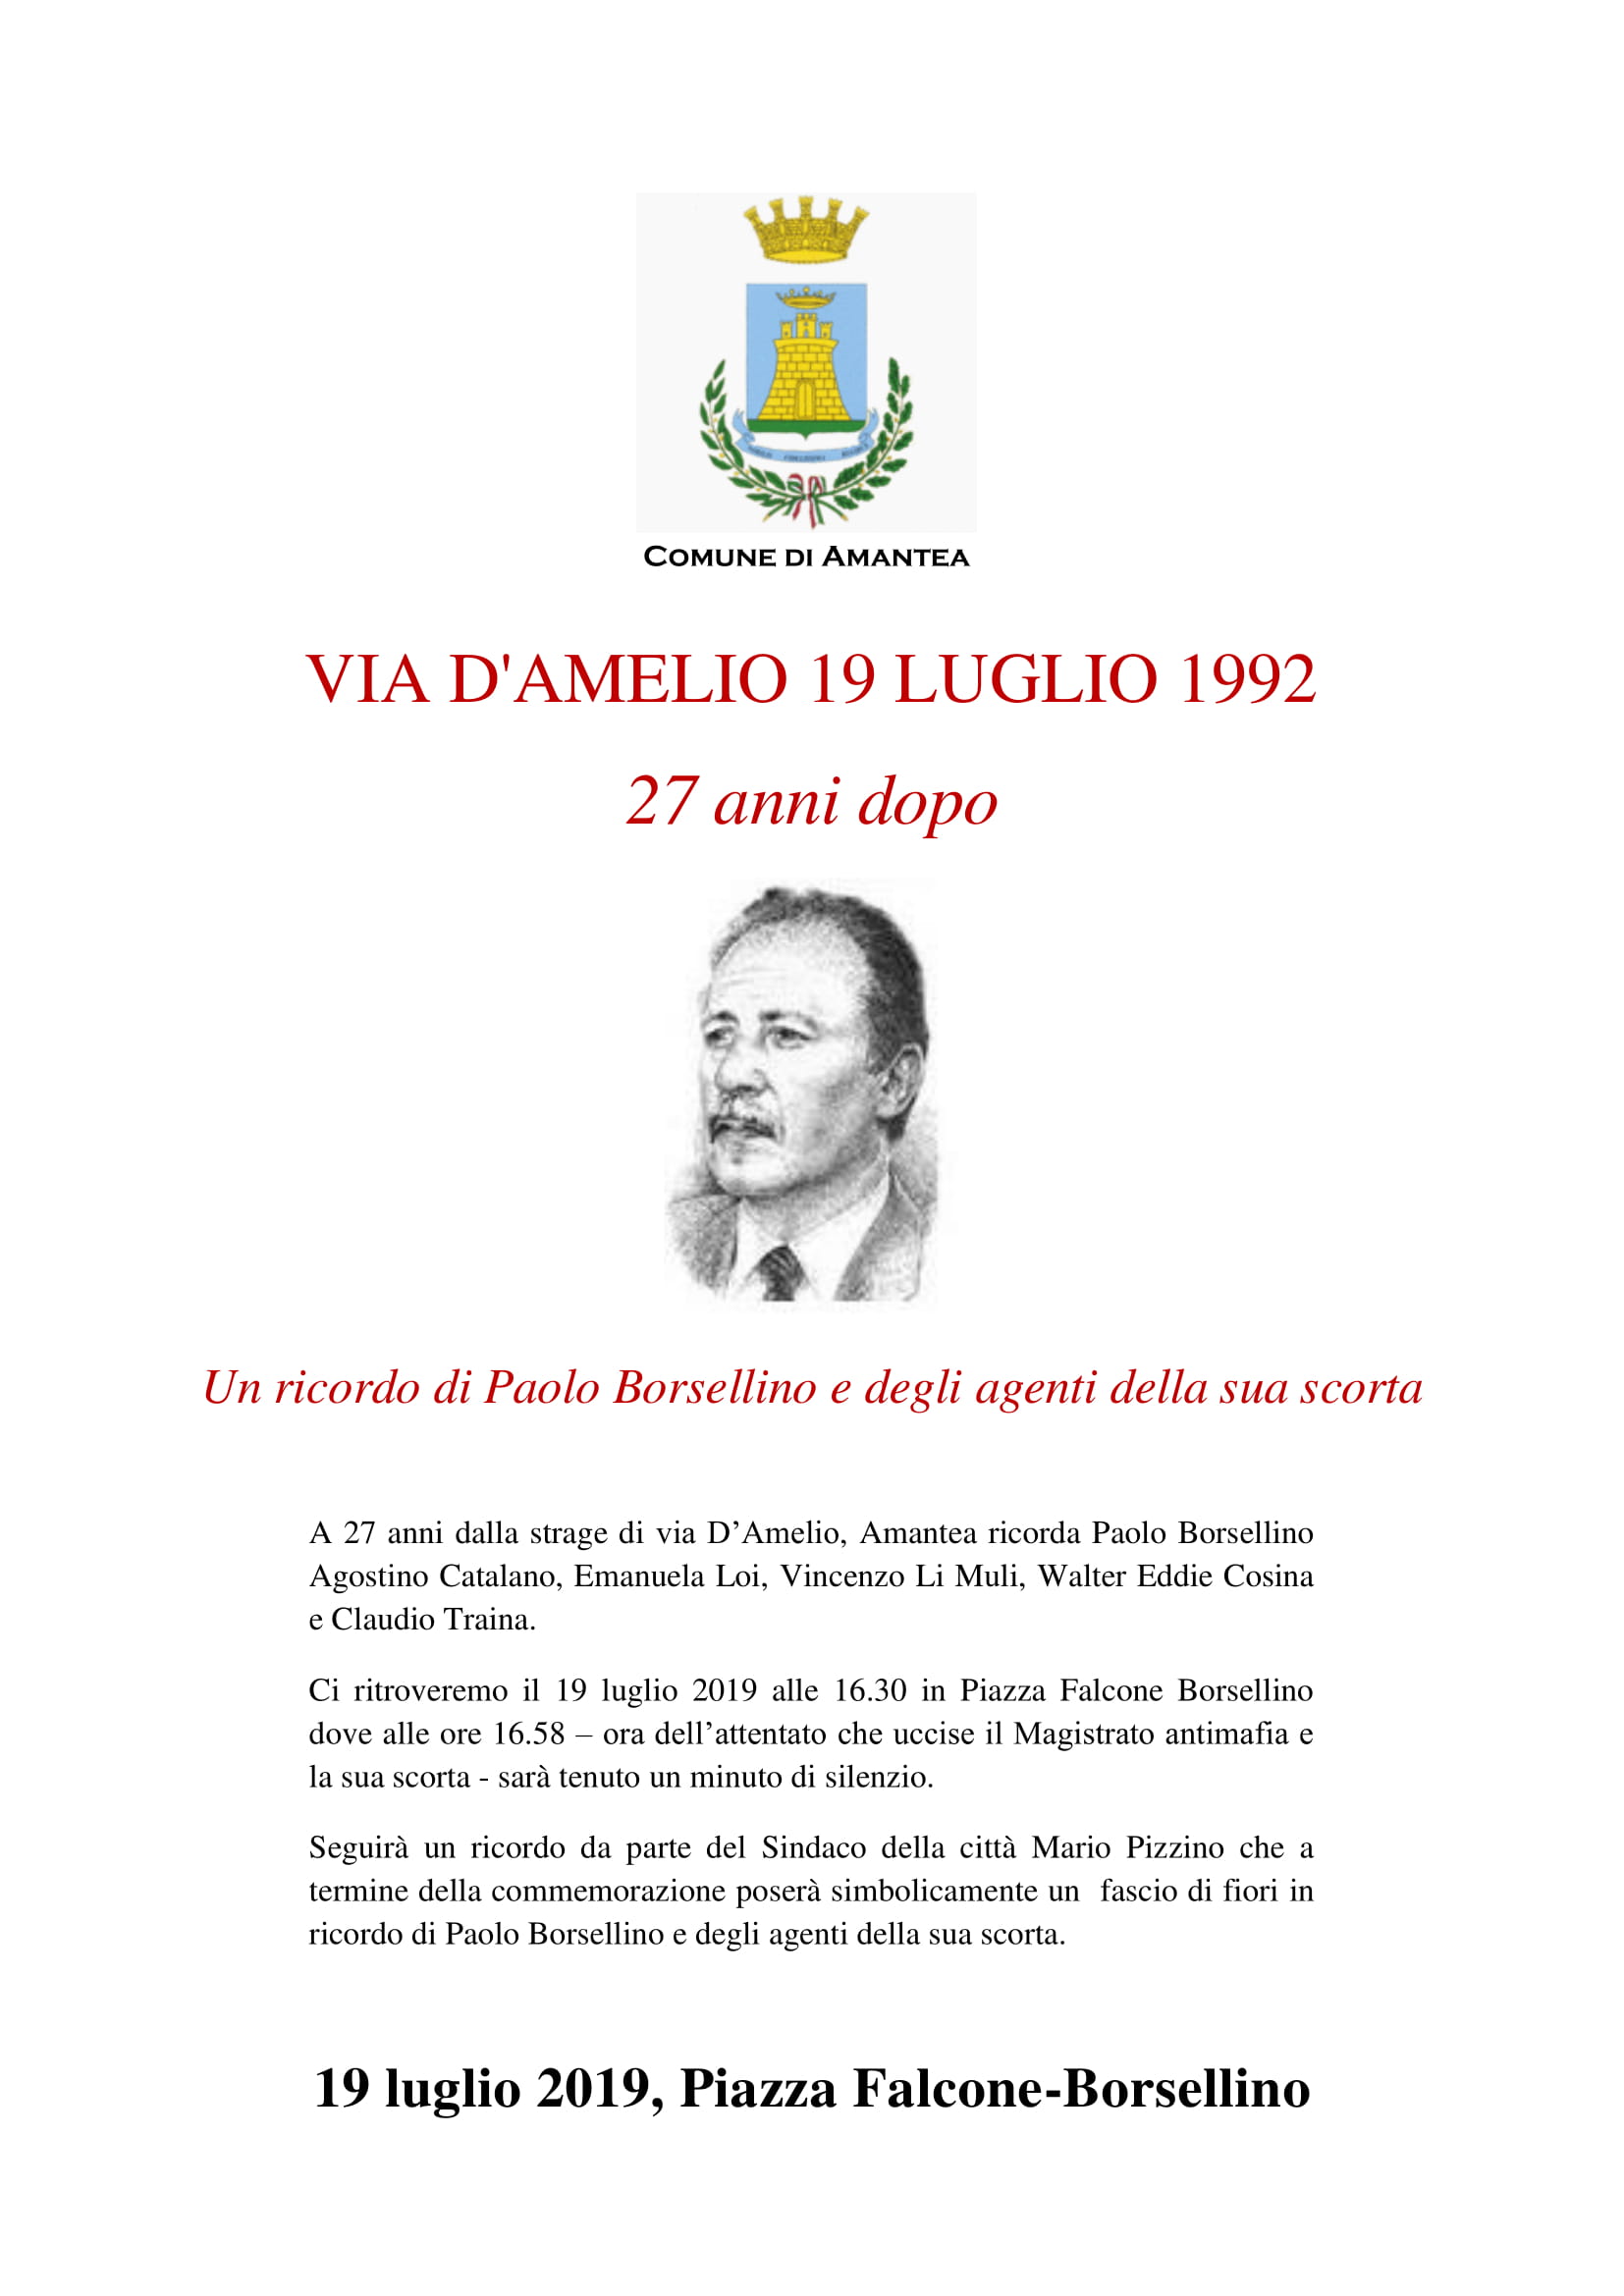 Via D’Amelio 19 luglio 1992 – 27 anni dopo. Un ricordo di Paolo Borsellino e degli agenti della sua scorta.